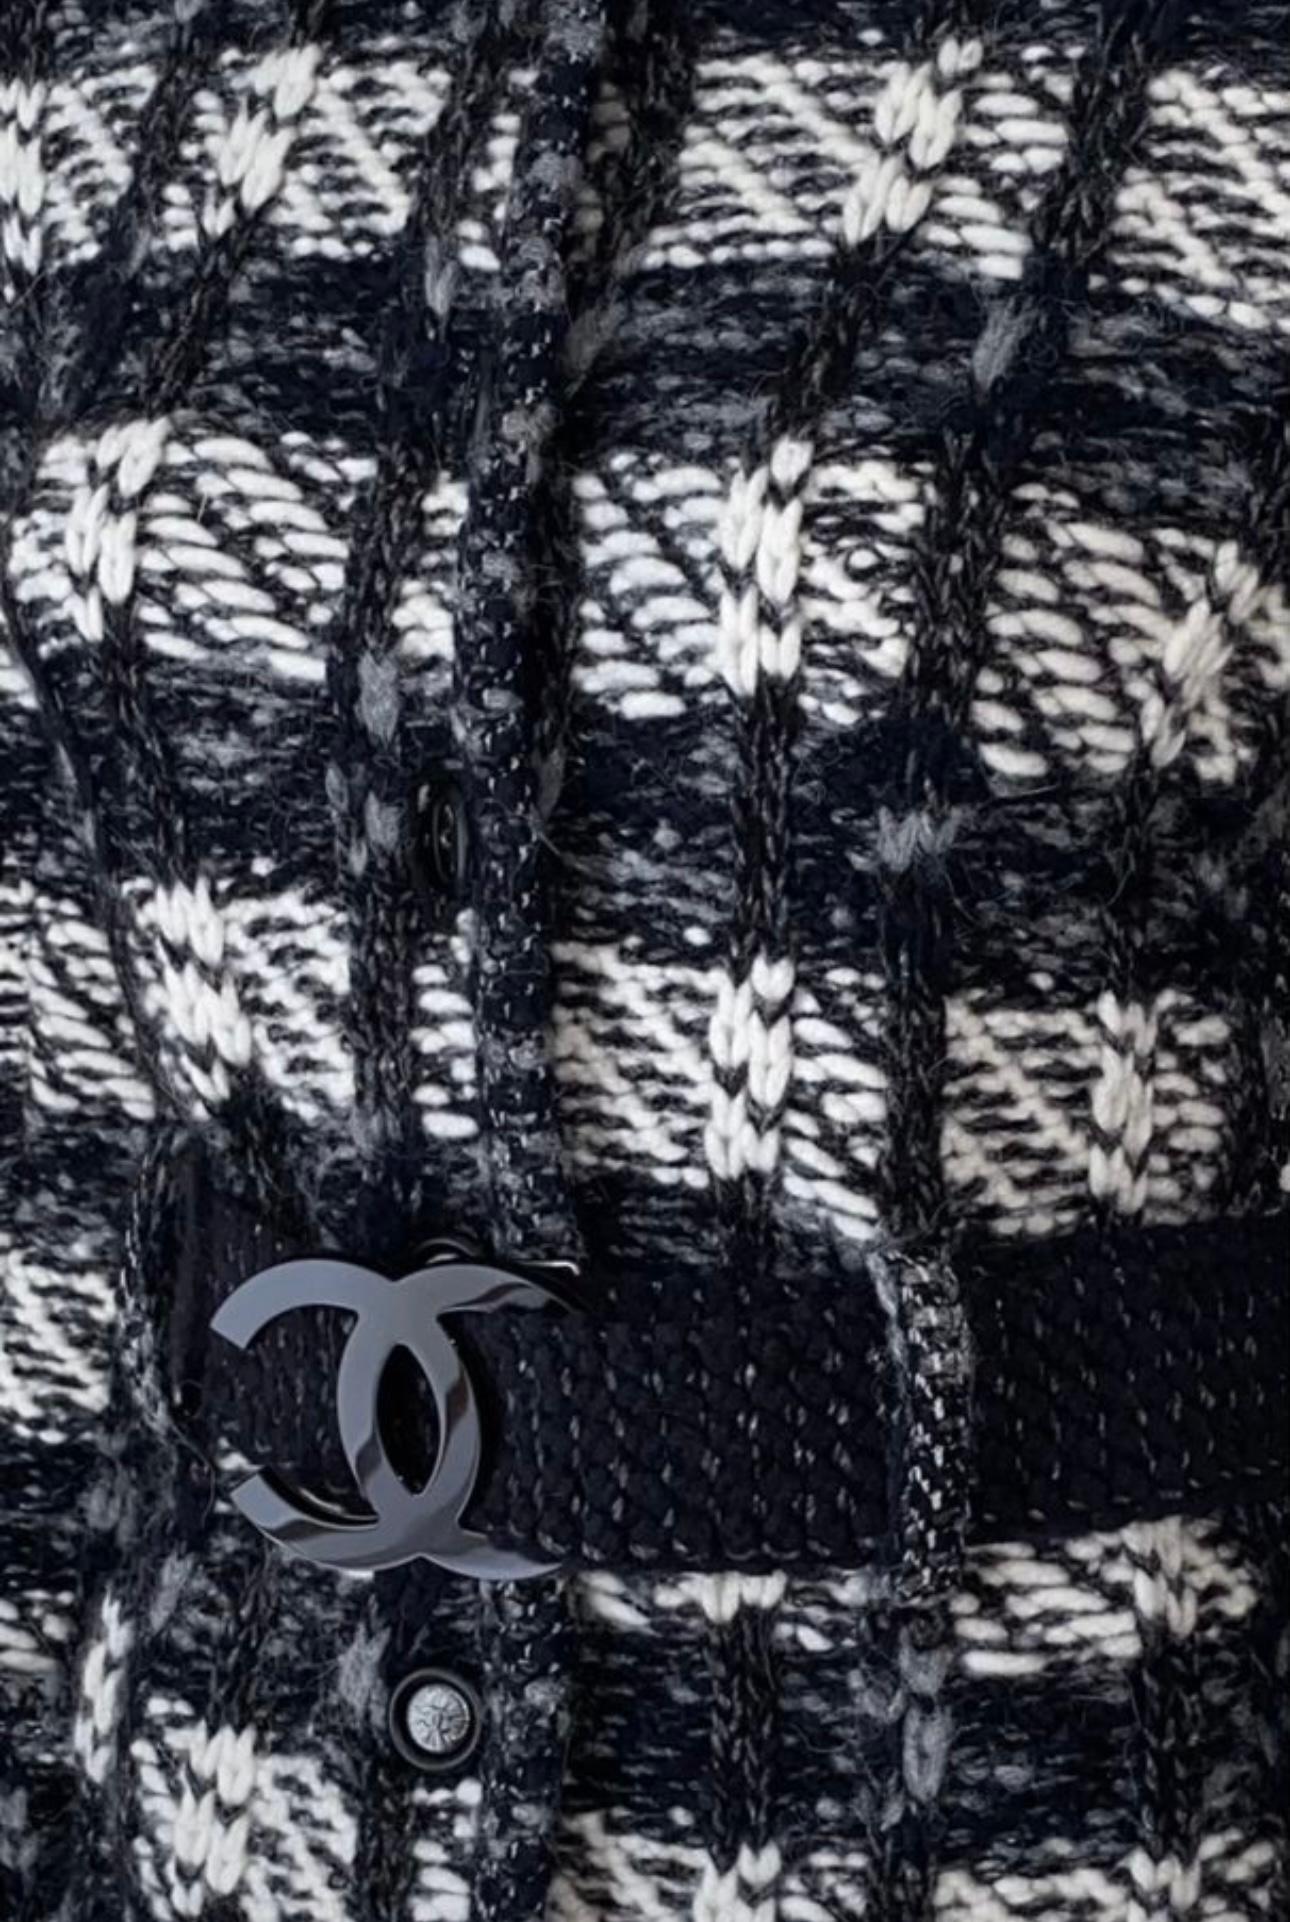 Veste noire Chanel avec ceinture à boucle logo CC.
Fermeture frontale par boutons avec logo CC
Taille 38 FR. Conservé sans avoir été porté, état d'un objet neuf.